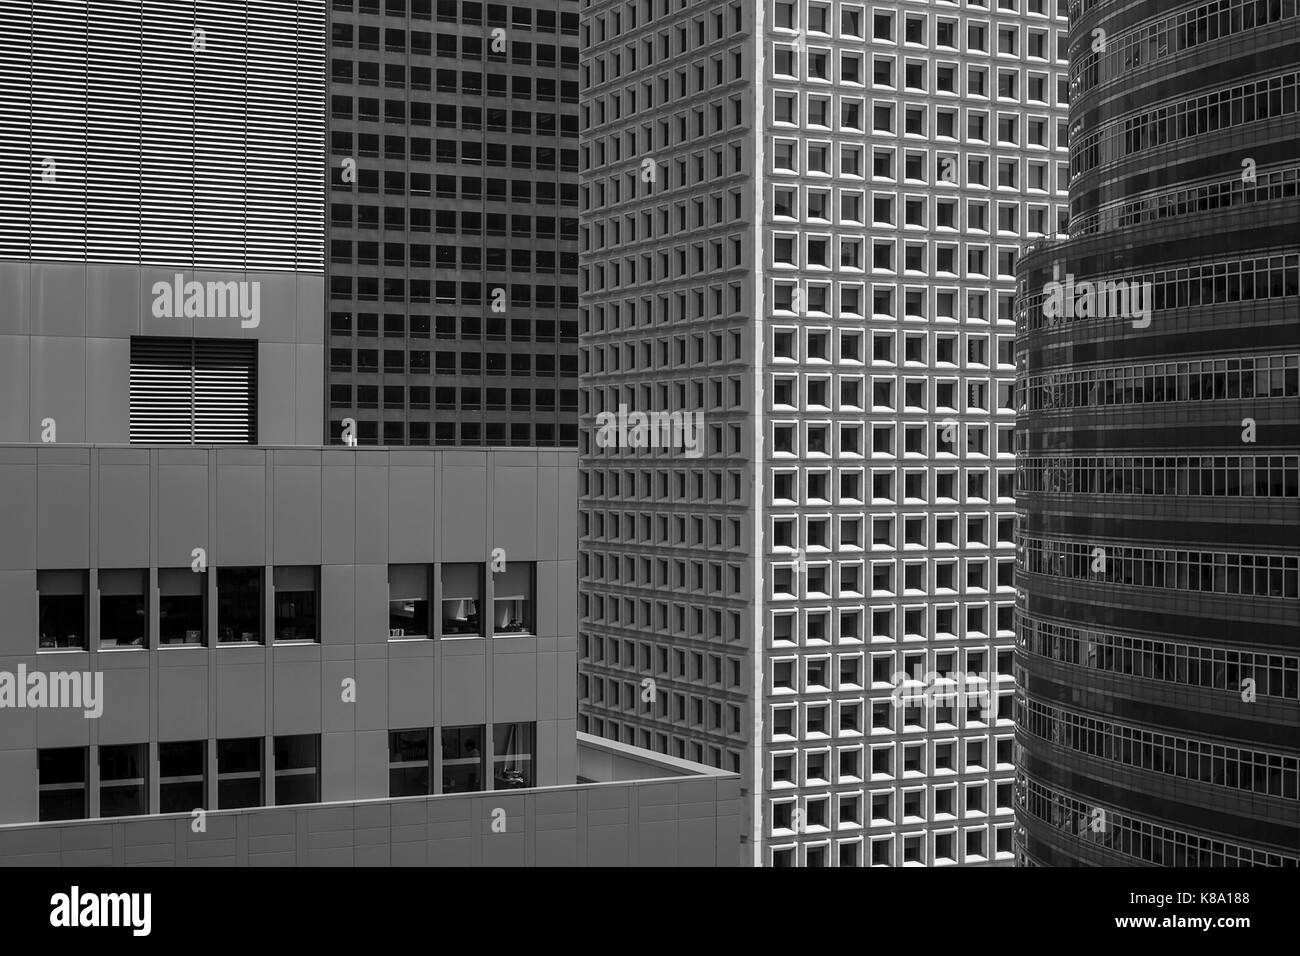 In bianco e nero della vista di dettaglio di 4 grattacieli sulla Terza Avenue. New York Cityscapes 2017, New York City, Stati Uniti. Architetto: vari, 2017. Foto Stock